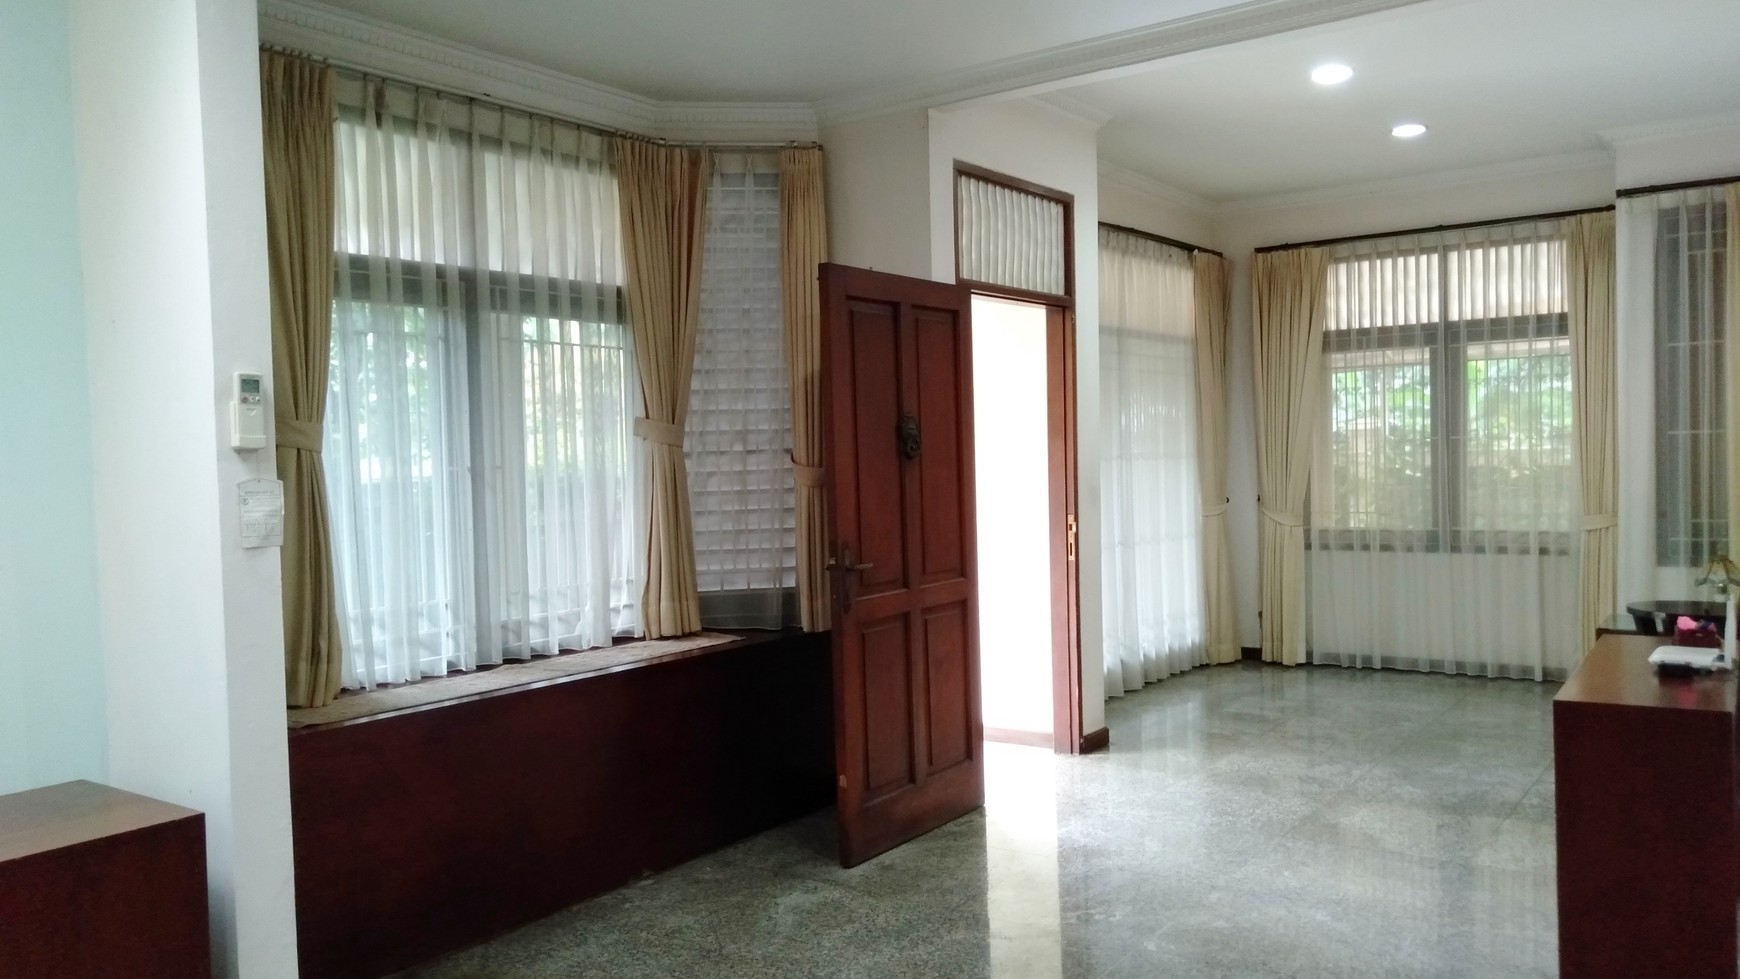 Dijual Rumah #DIBAWAH HARGA NJOP# Harga Termurah di Kawasan Elite Jakarta, di Pondok Indah, Jakarta Selatan